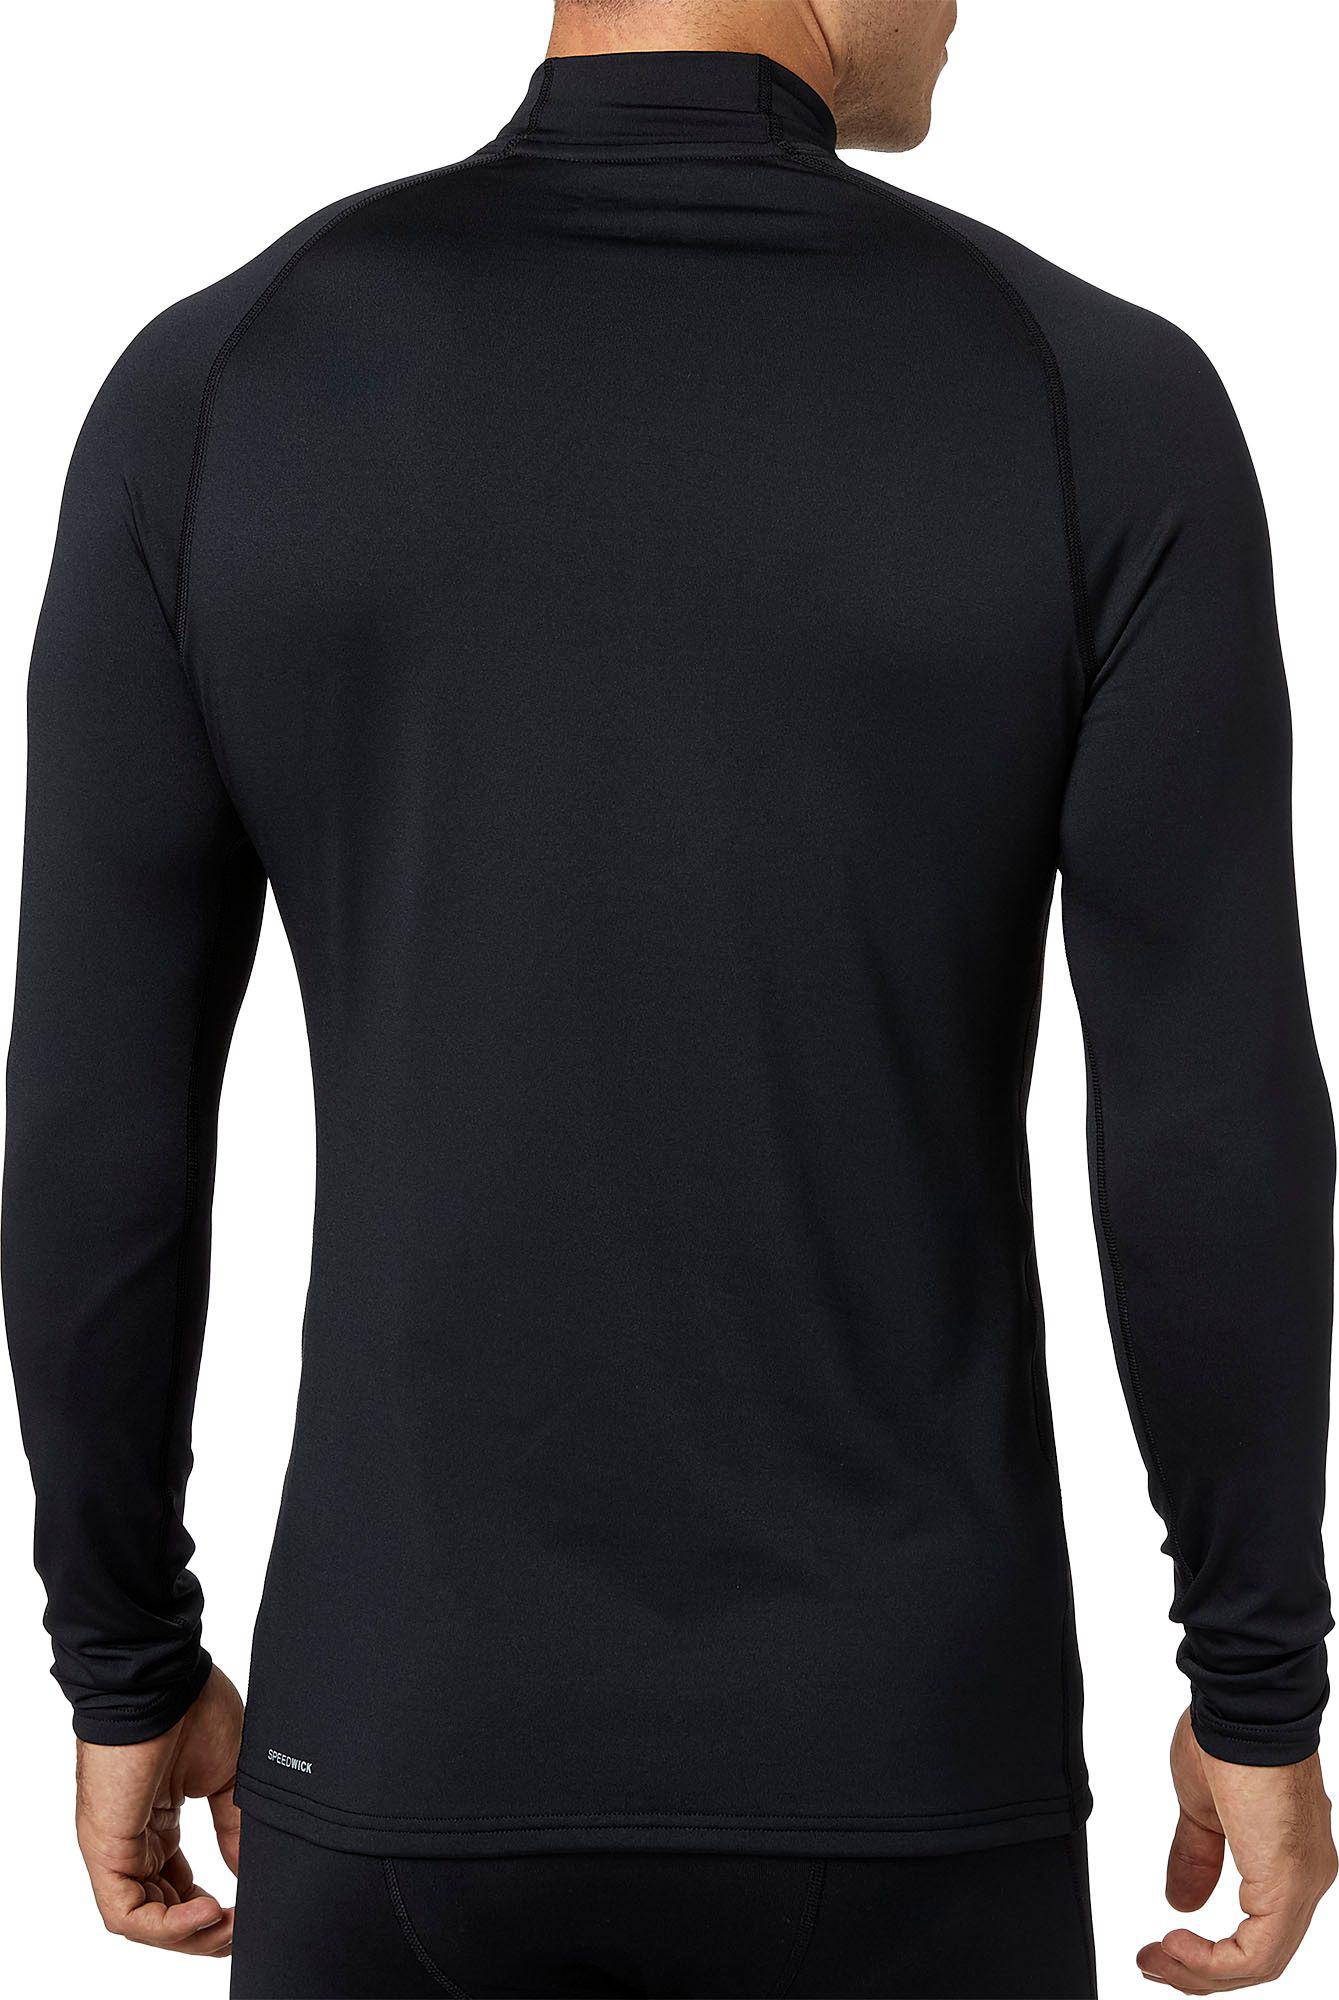 reebok men's cold weather compression mock neck long sleeve shirt